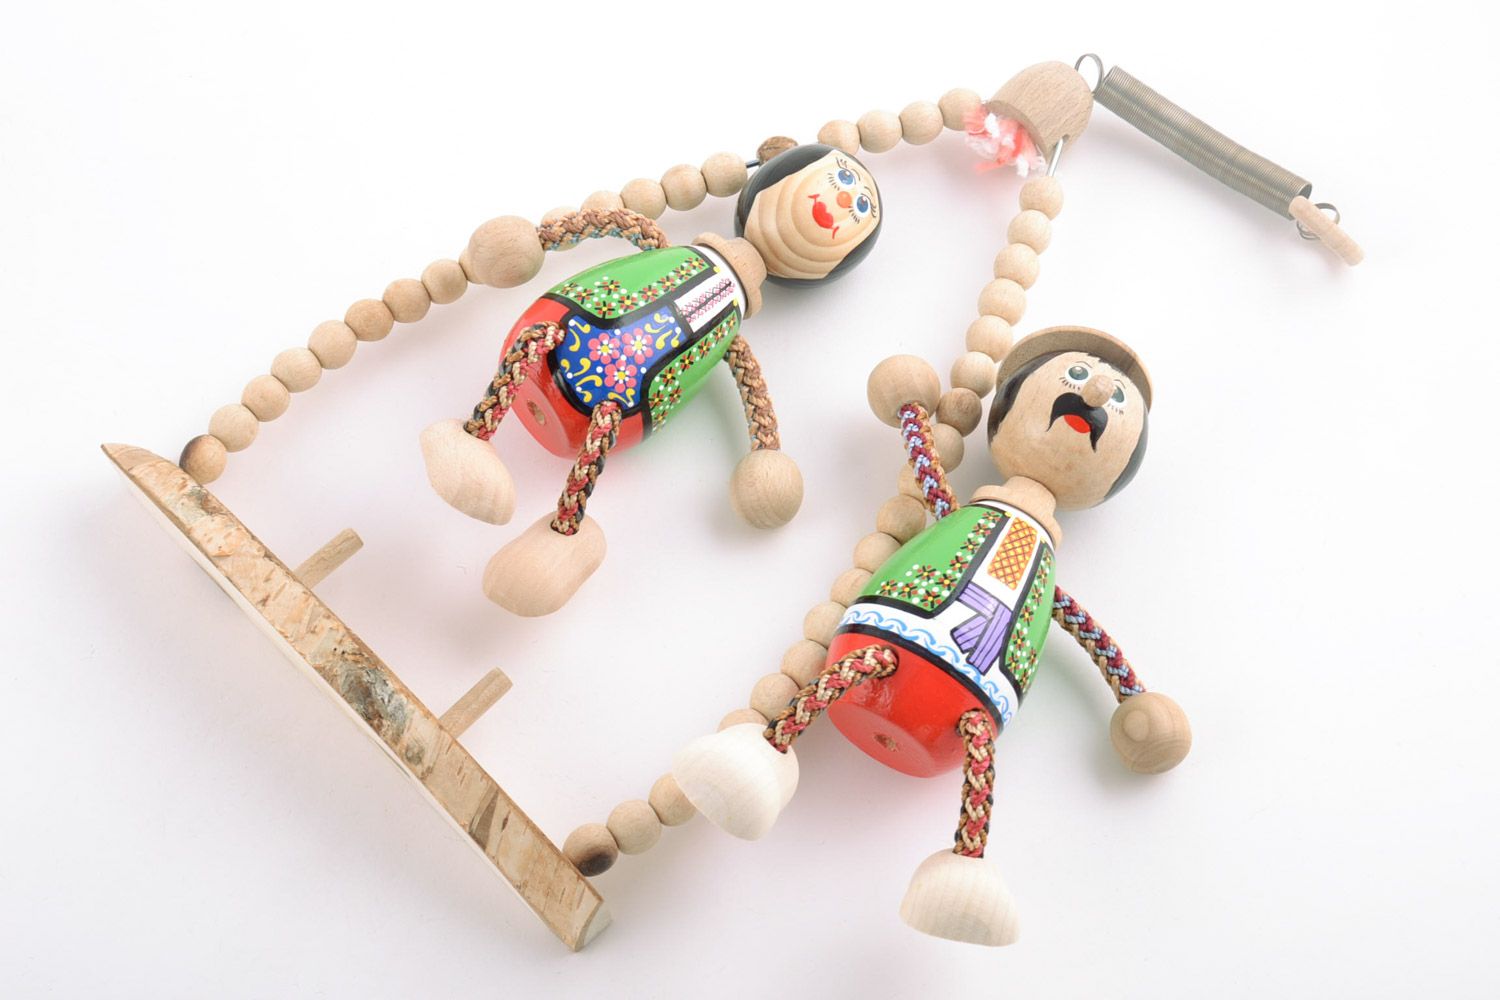 Детская игрушка на пружинке ручной работы из дерева расписанная эко красками фото 5